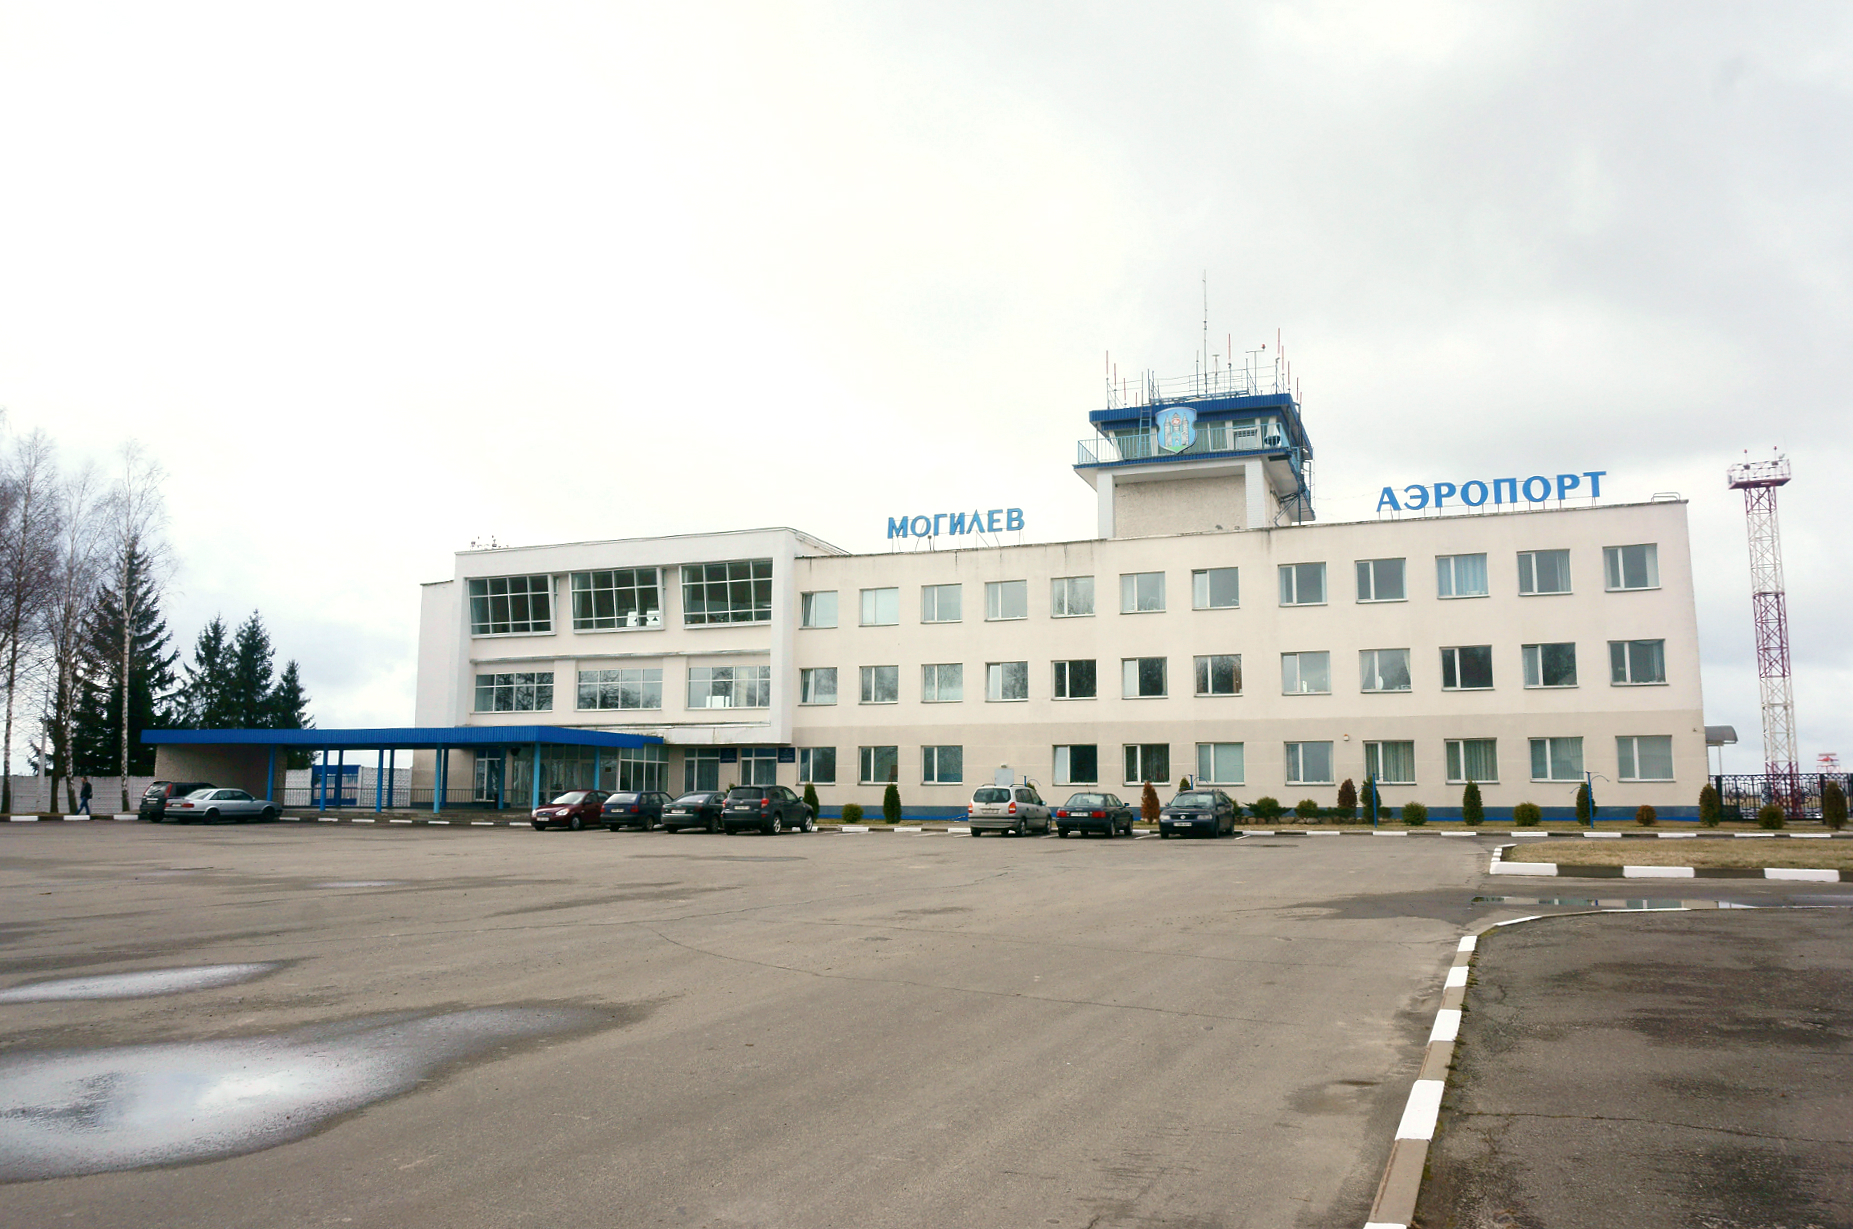 Аэропорт Могилёв